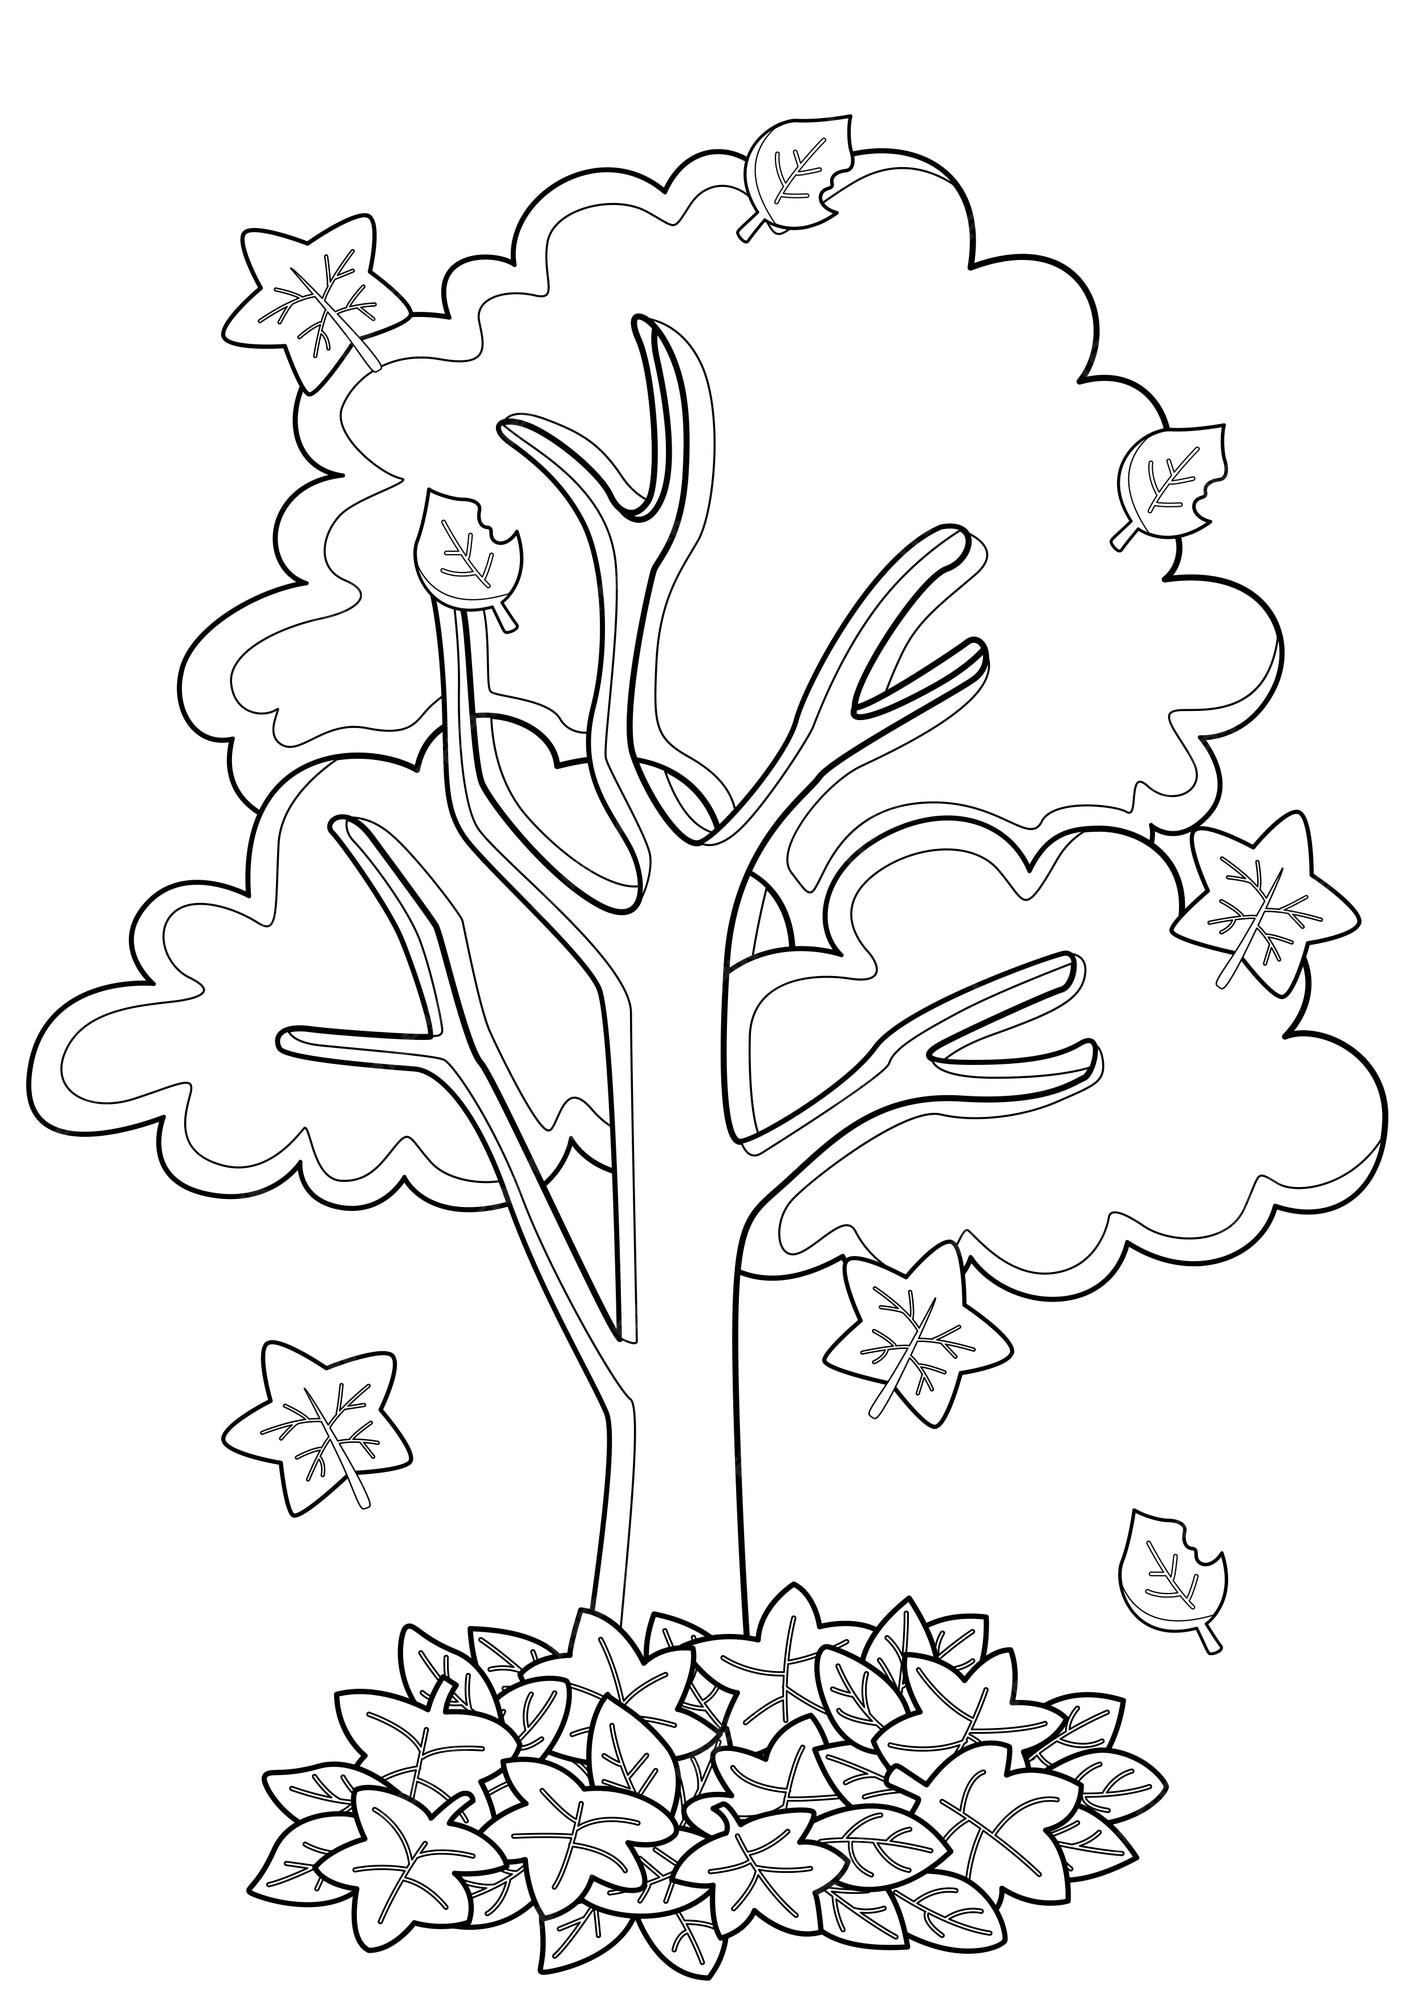 Desenhos de árvores para colorir com as crianças